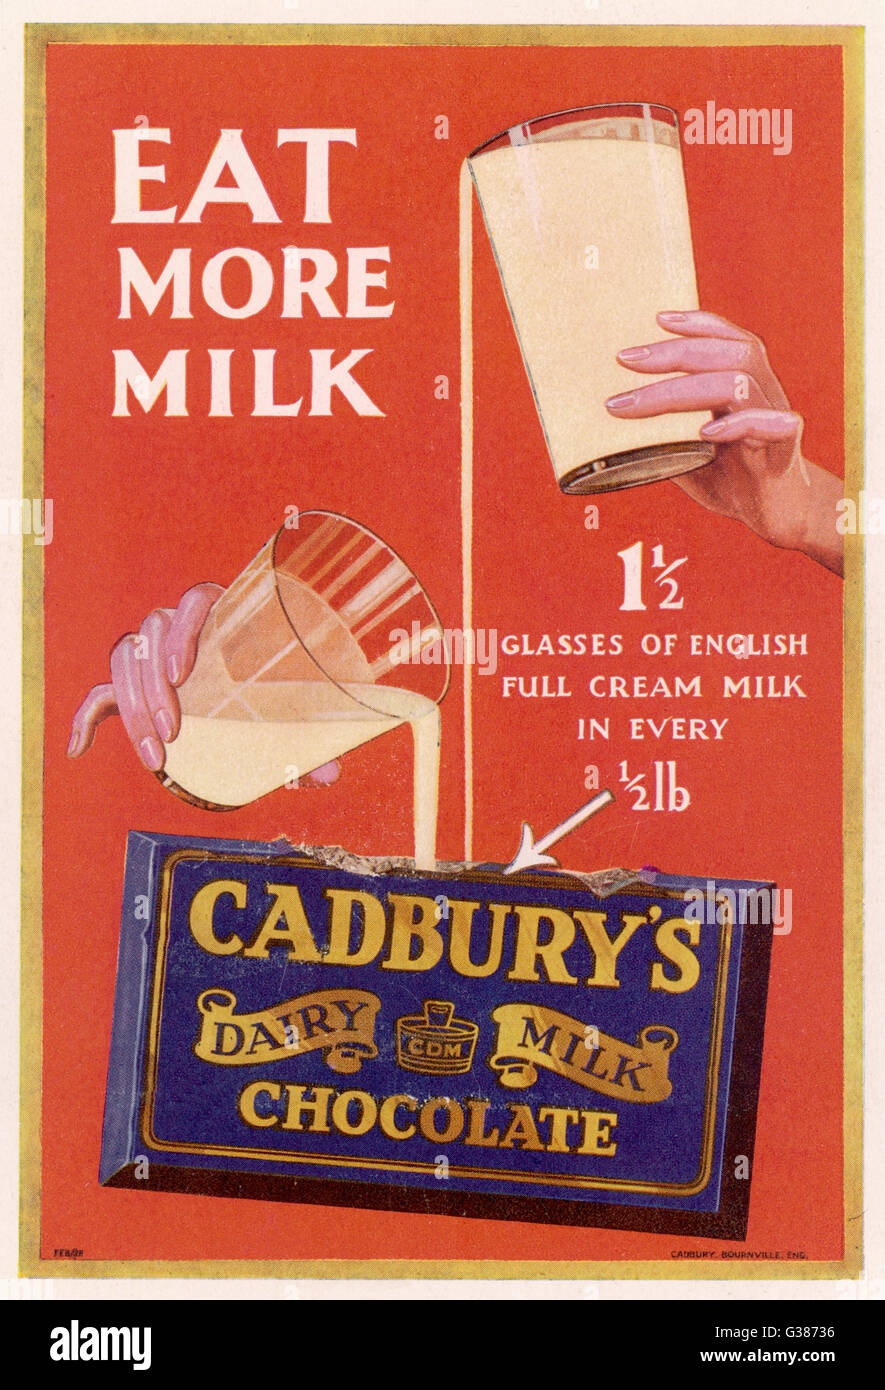 Annuncio mostrando come uno e mezzo bicchieri di inglese latte intero sono  in ogni mezza libbra Cadbury's al latte di barrette di cioccolato data:  1929 Foto stock - Alamy